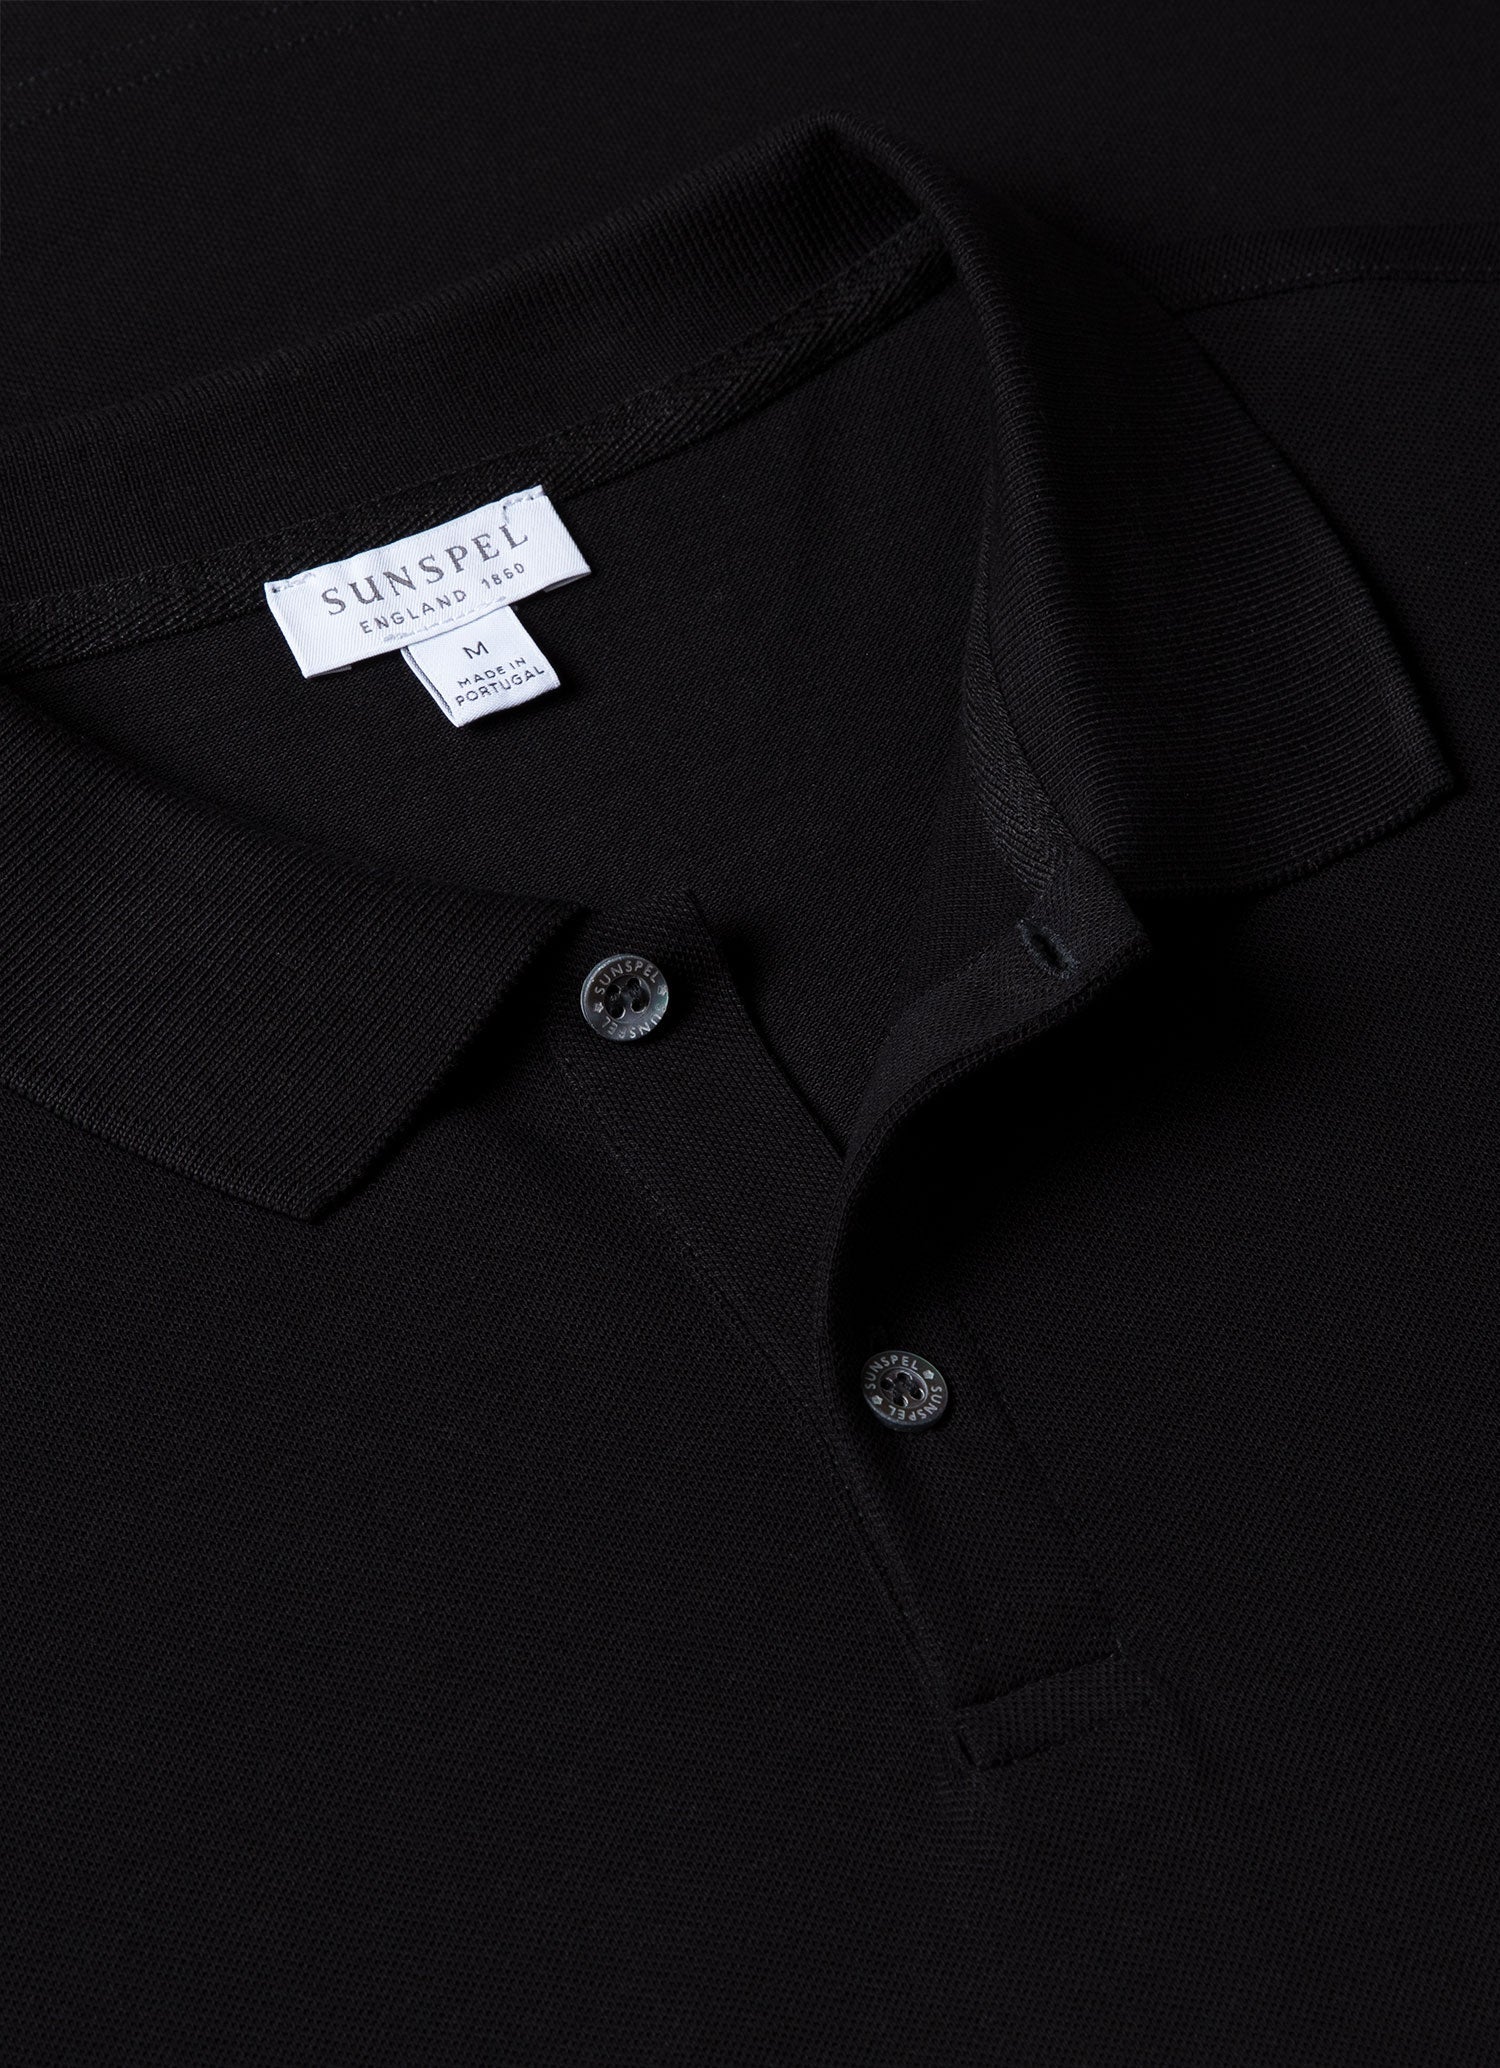 Men's Piqué Polo Shirt in Black